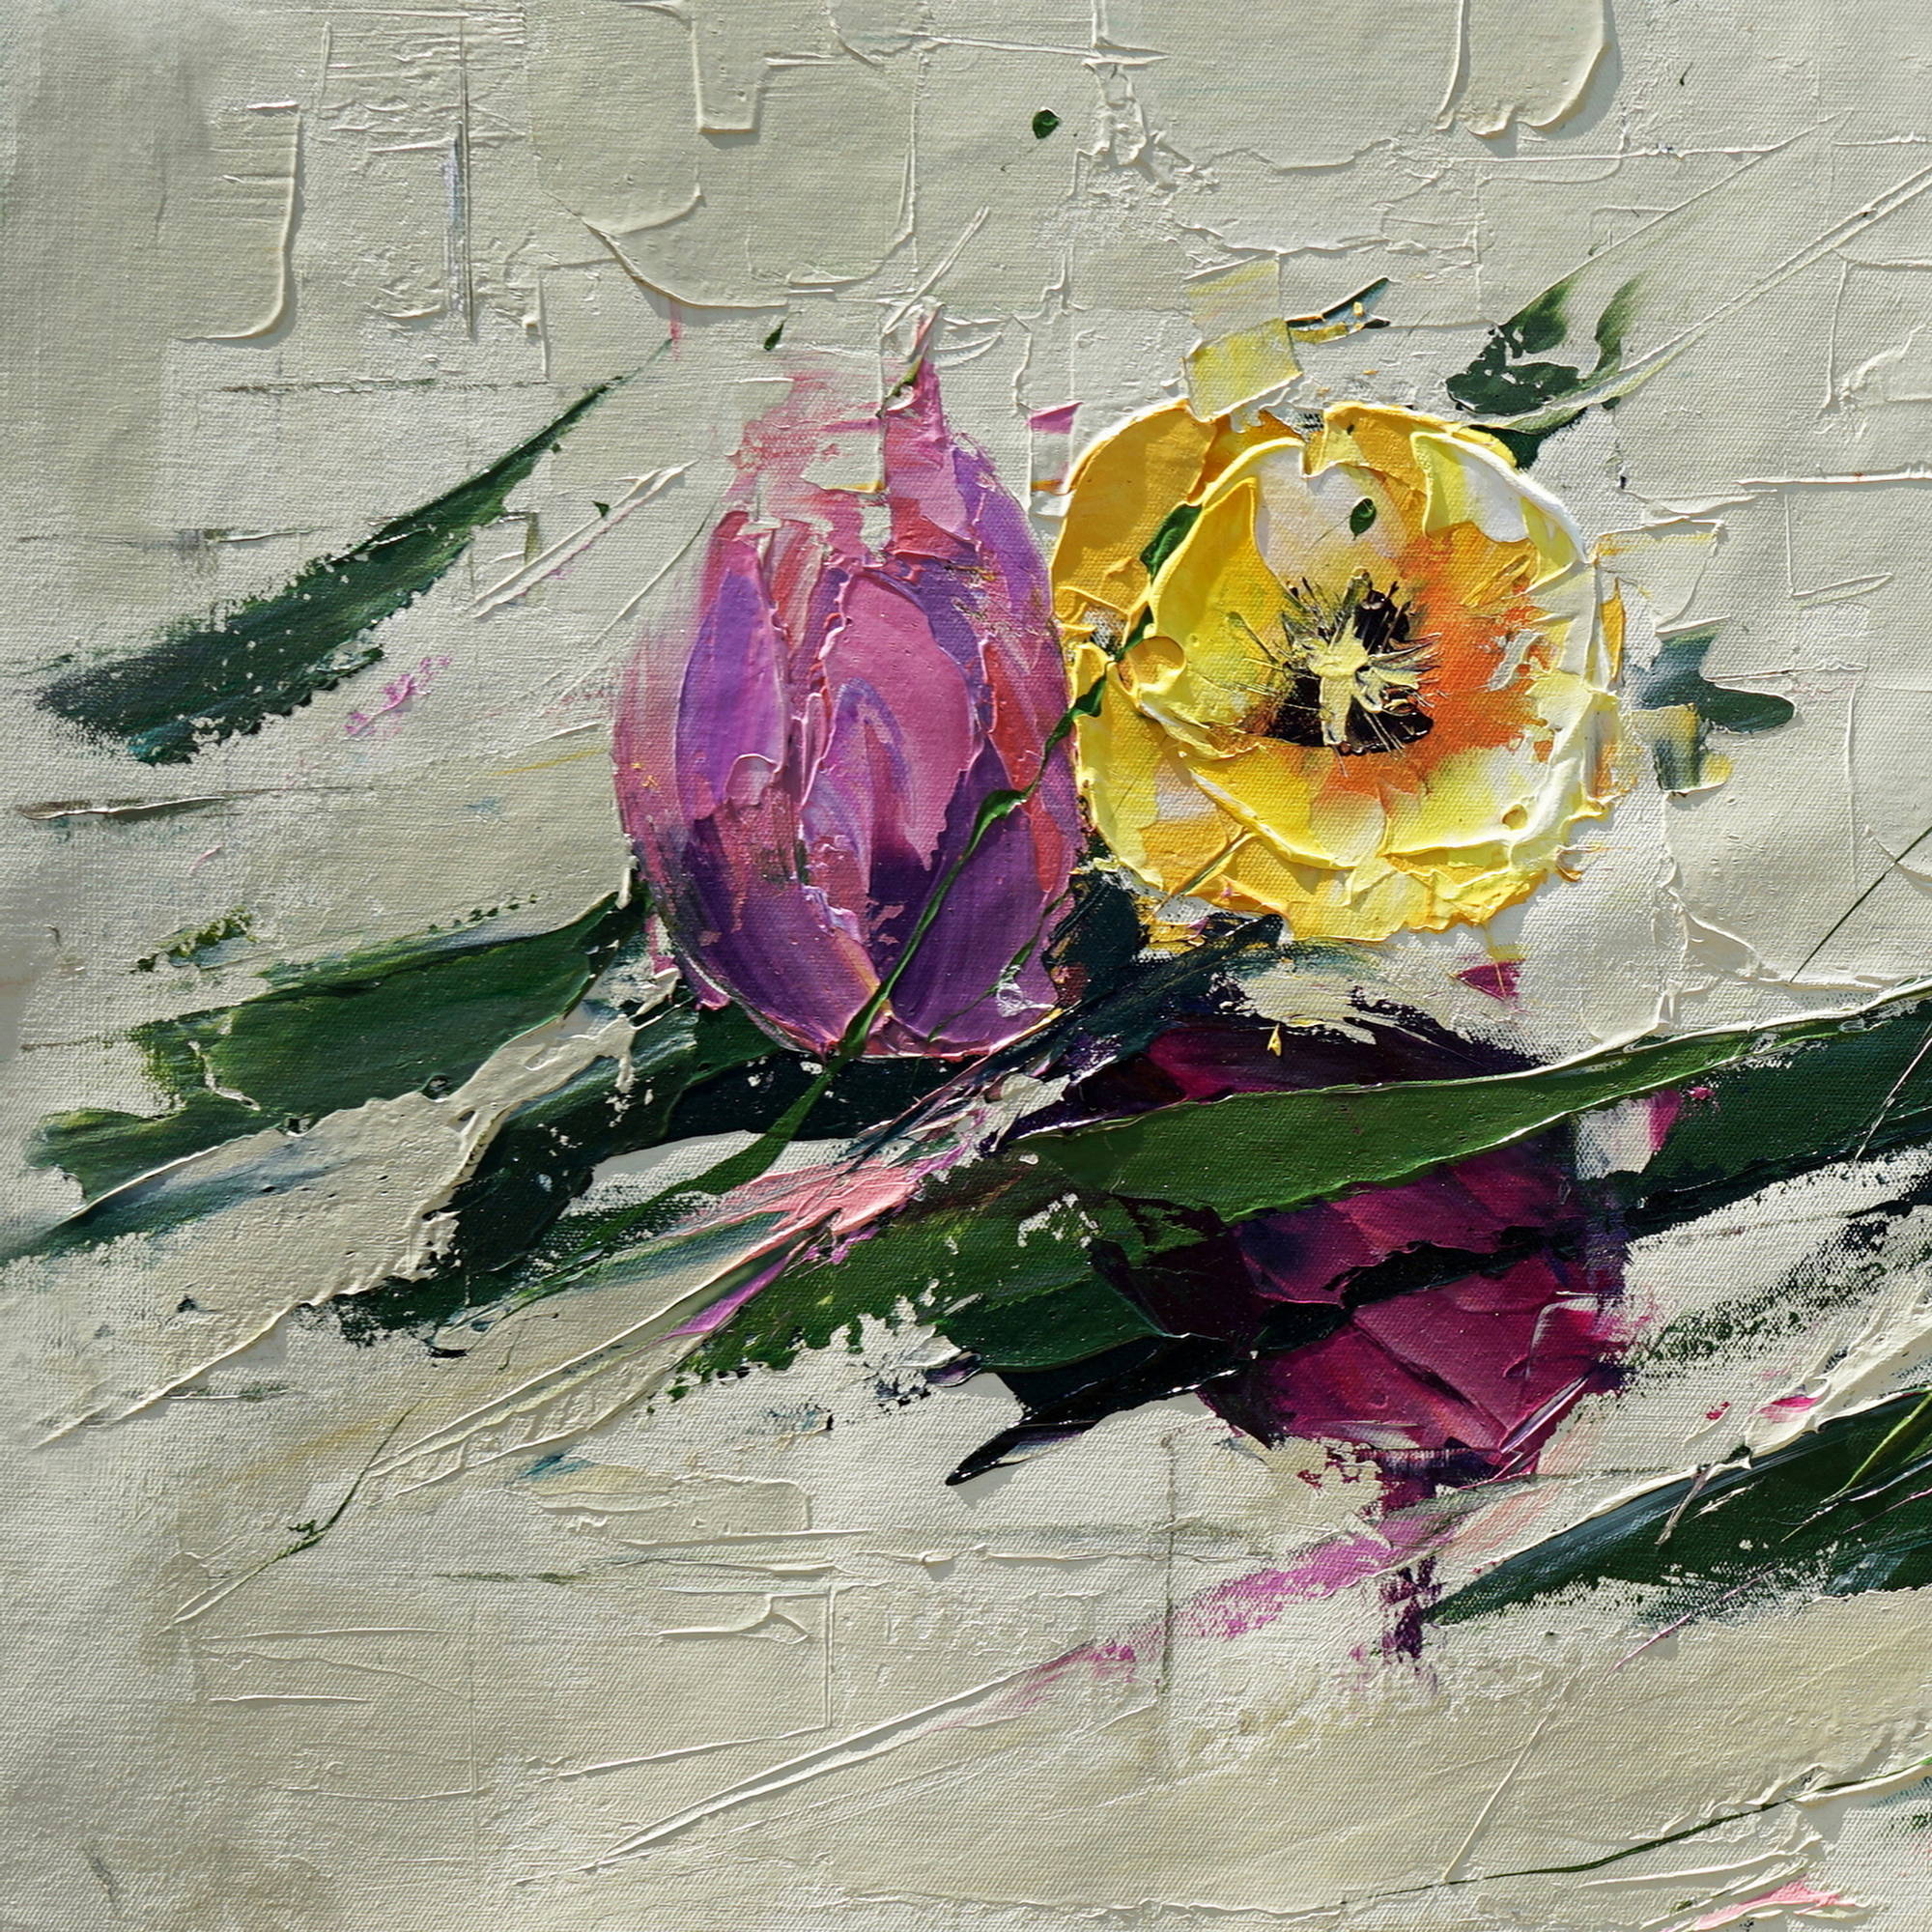 Dipinto a mano Composizione Tulipani Astratti 75x150cm